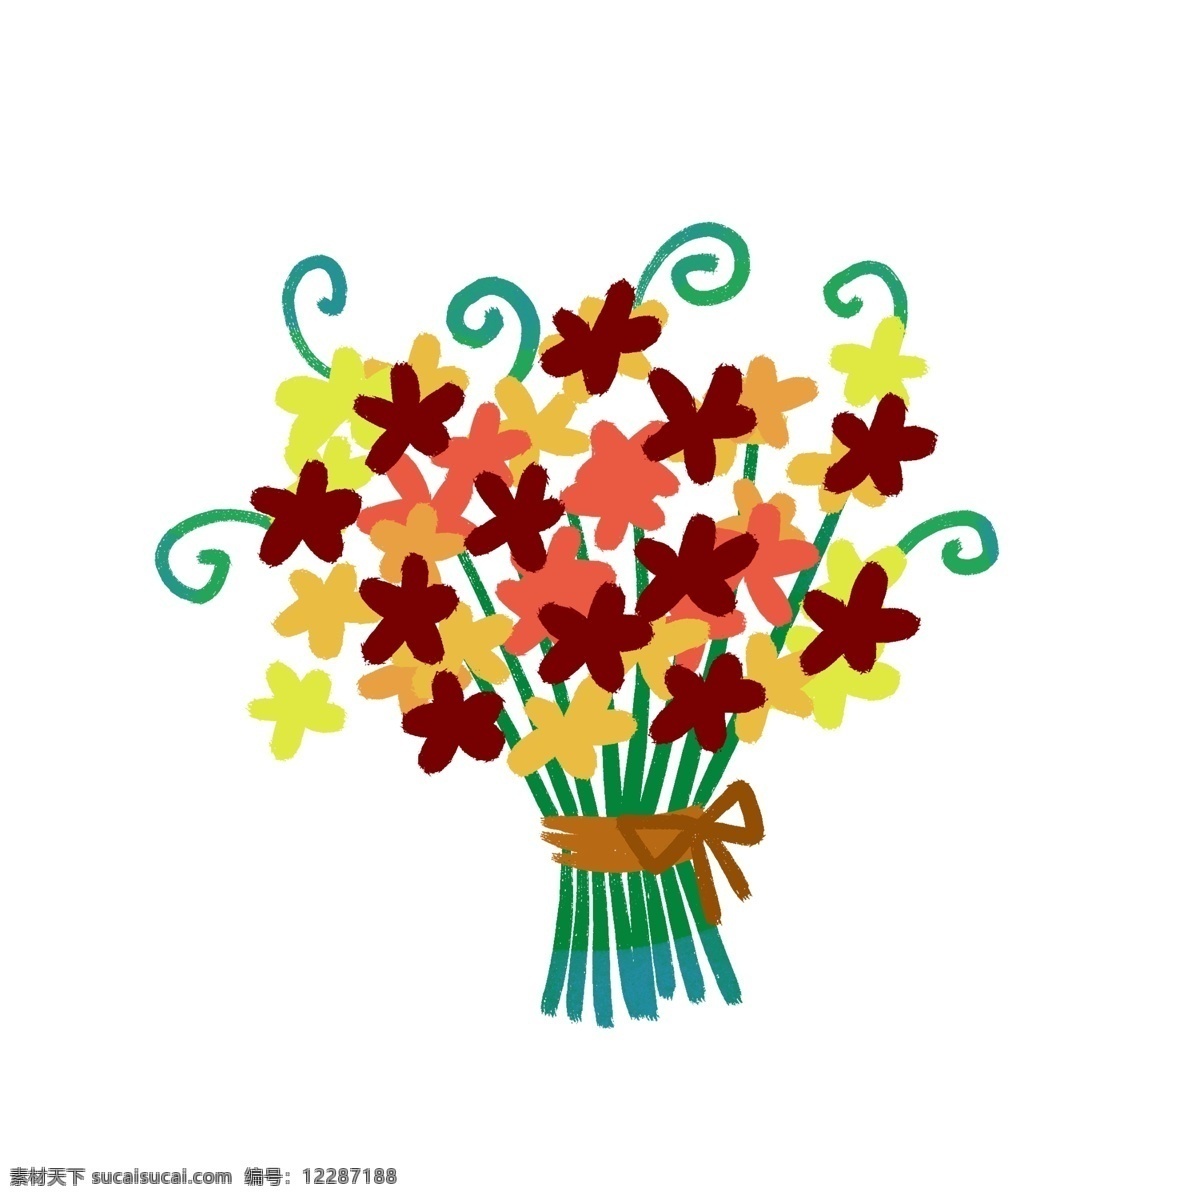 卡通 可爱 手绘 花朵 花卉 花束 彩色 元素 图案 插画 蝴蝶结